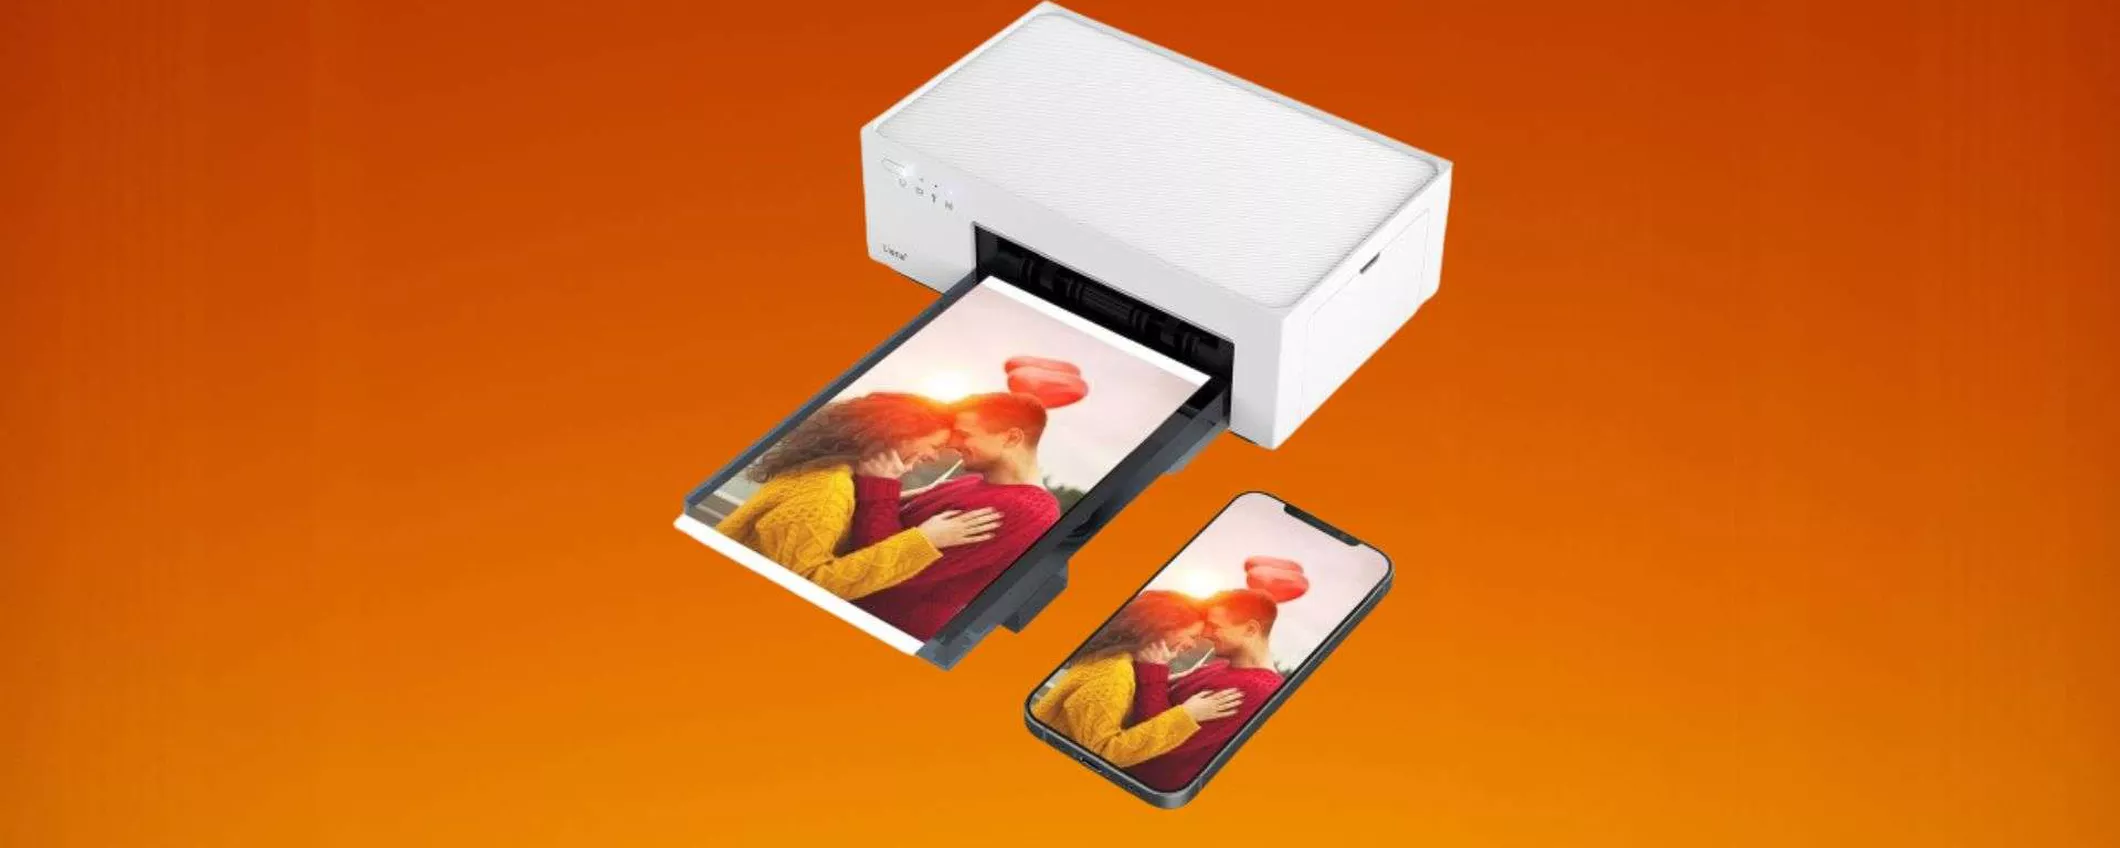 Stampante fotografica portatile in offerta: si collega allo smartphone e la porti ovunque